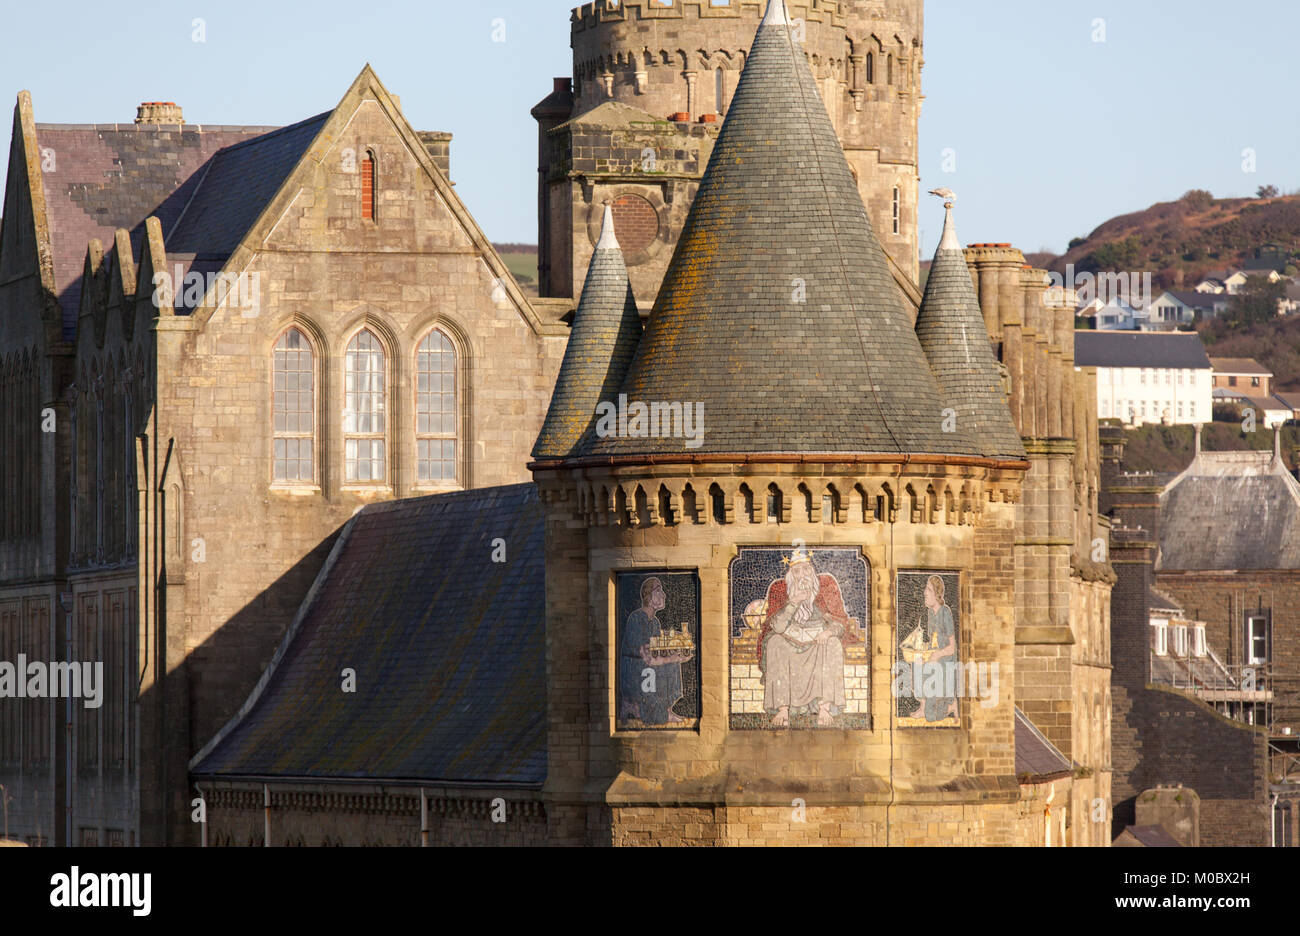 Stadt Aberystwyth, Wales. Malerische Ansicht von Wandmalereien auf der Klasse 1 aufgeführt, alte Hochschule Gebäude südlichen Türme. Stockfoto